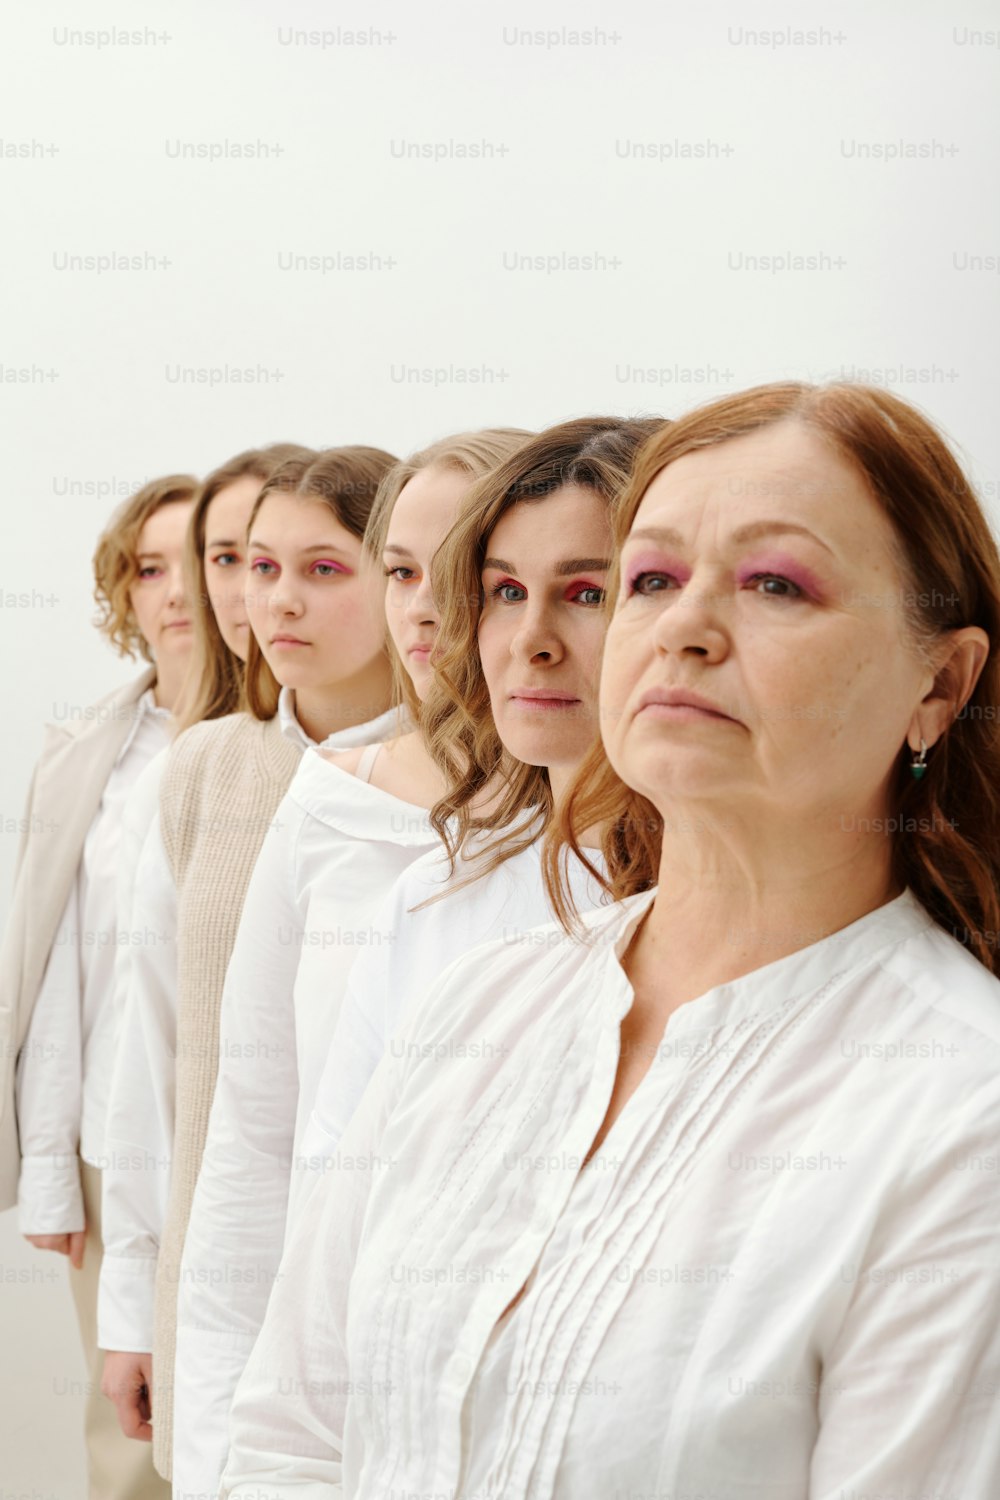 Un gruppo di donne in piedi l'una accanto all'altra